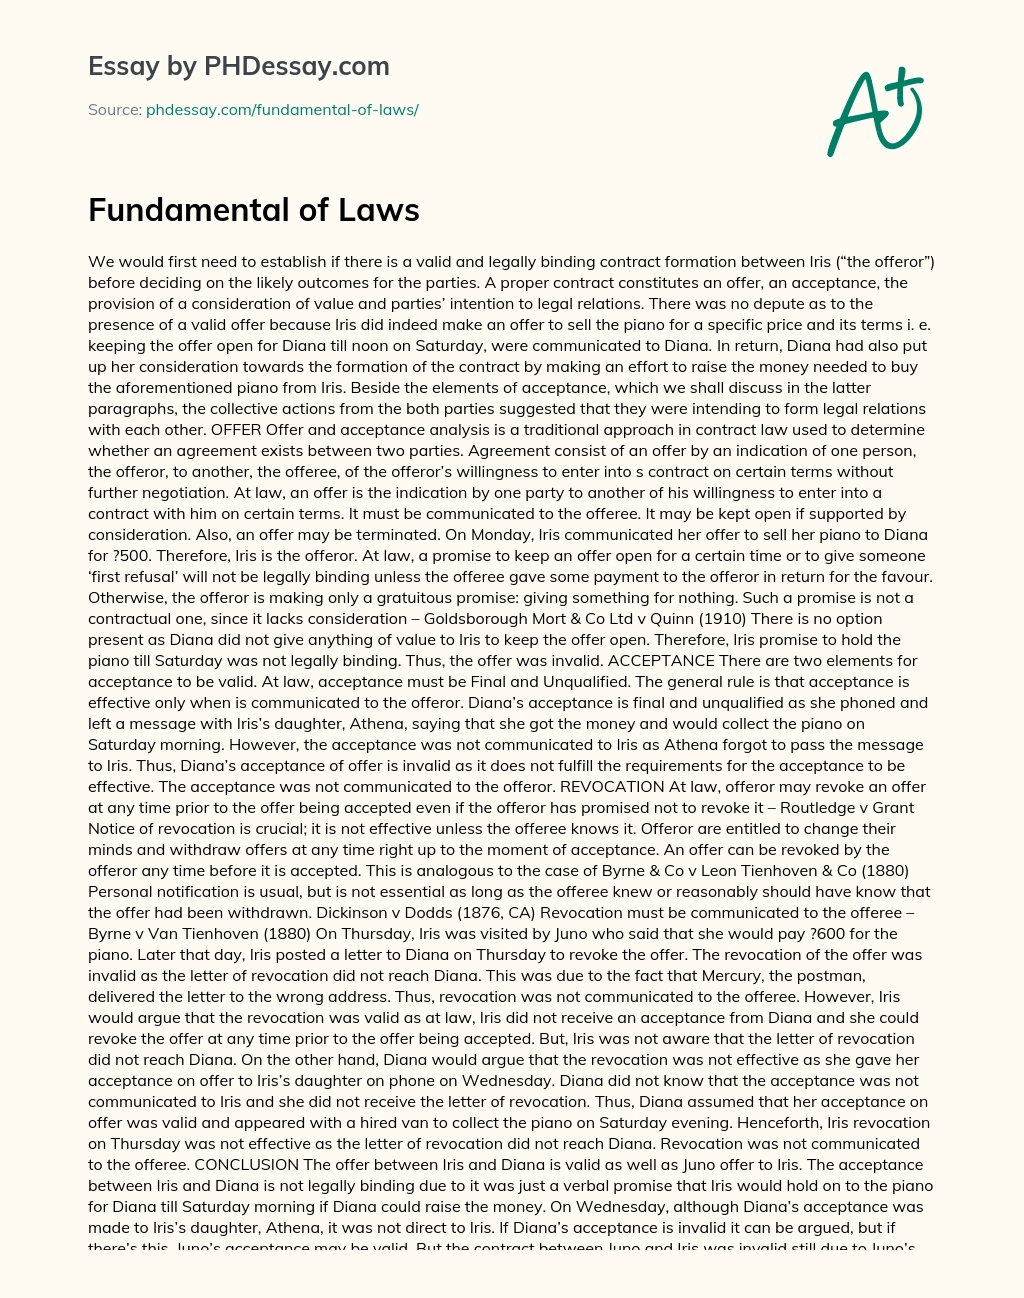 Fundamental of Laws essay